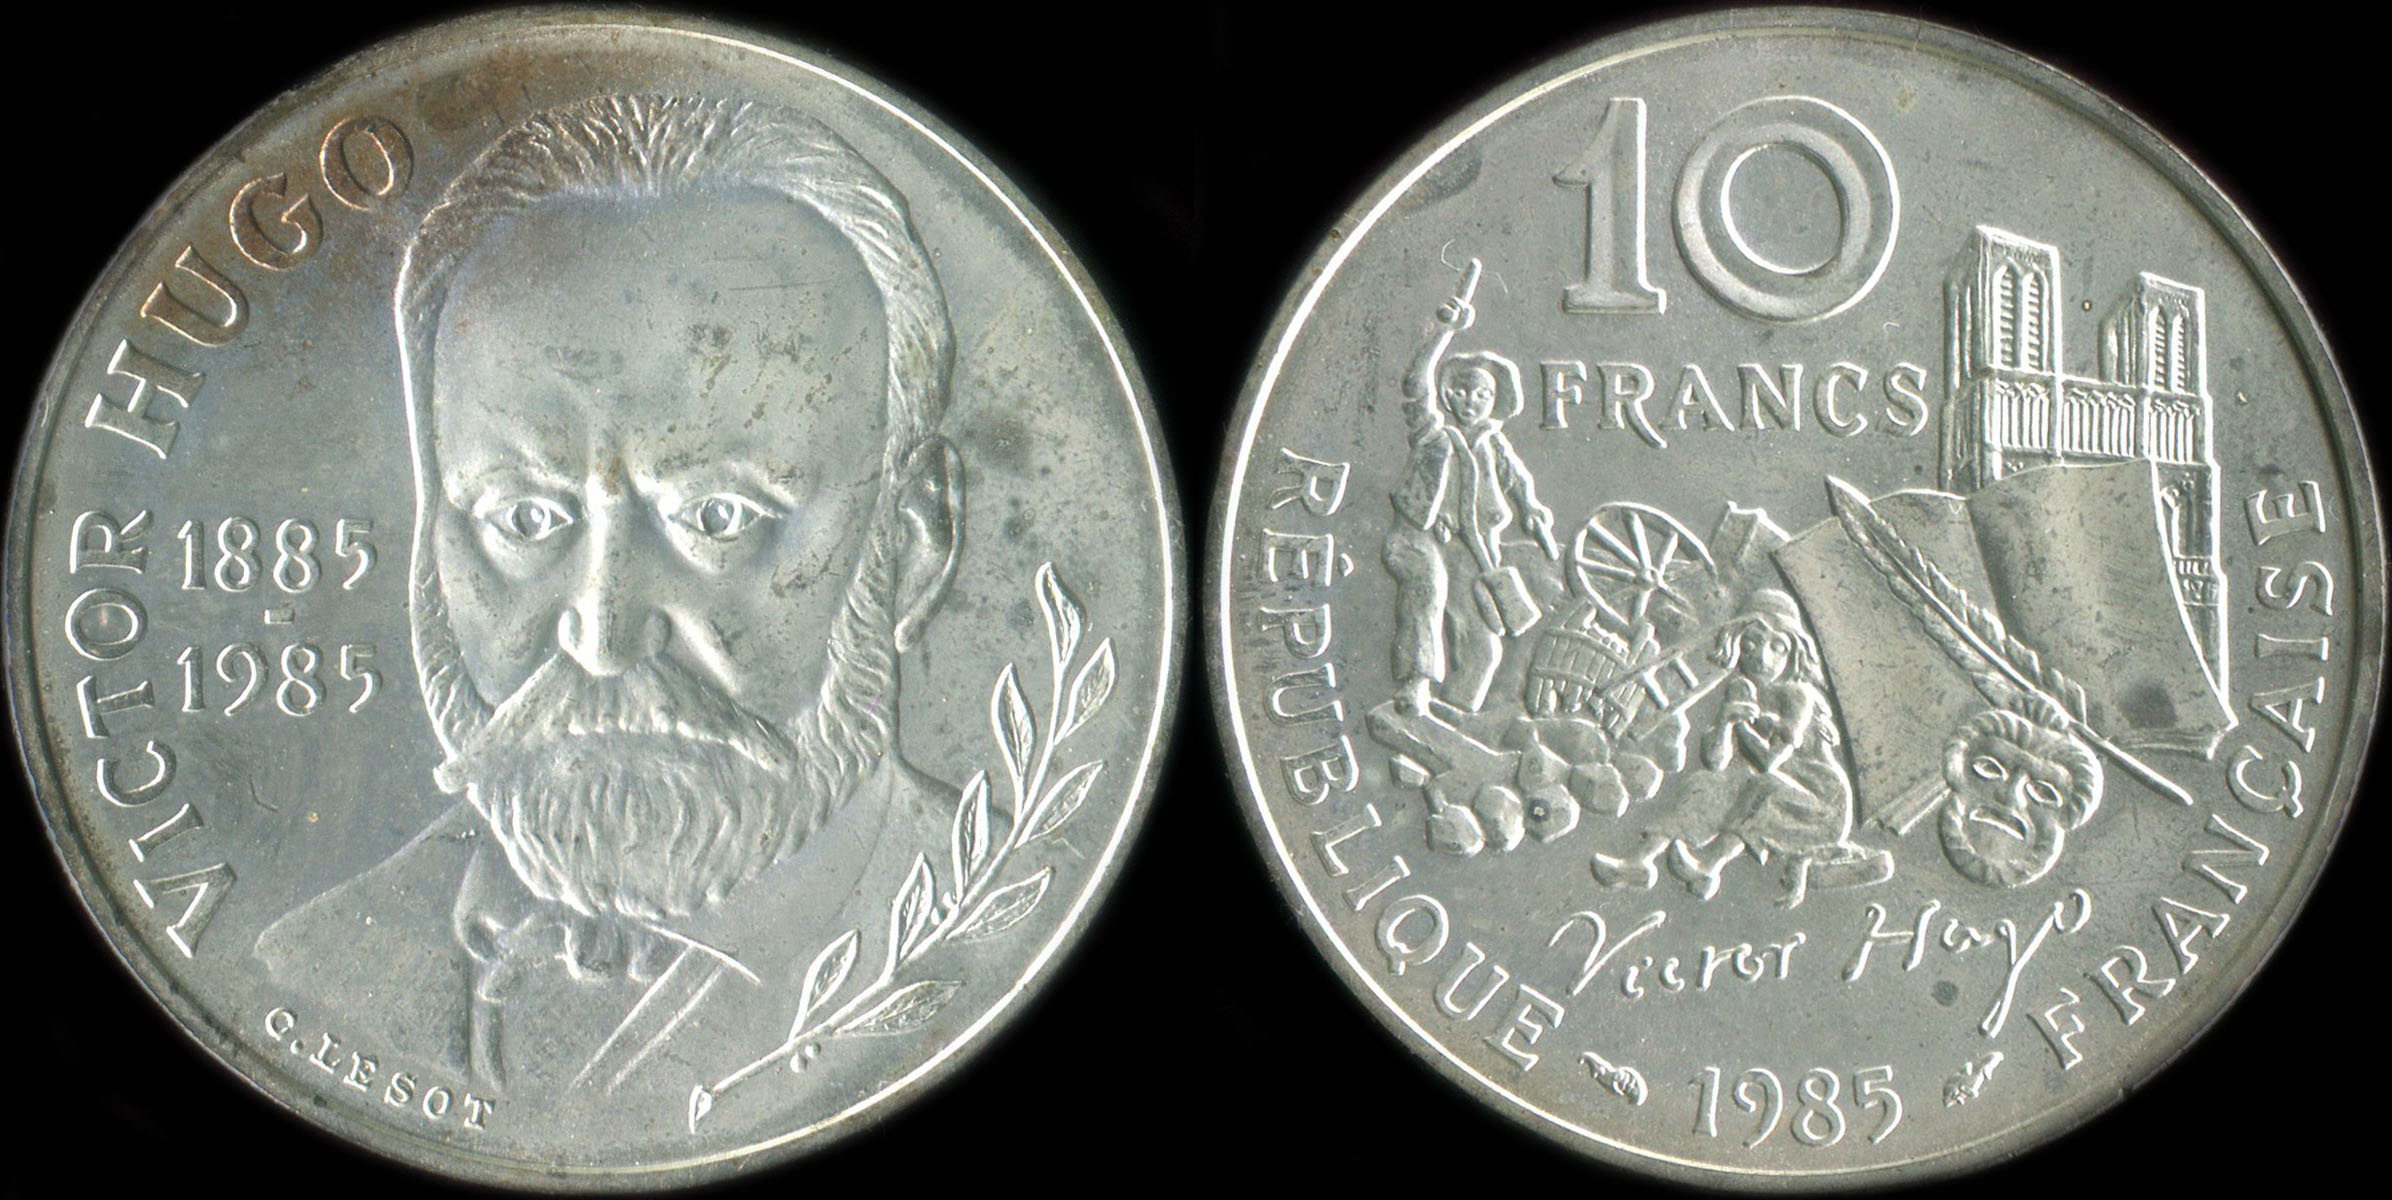 Pice de 10 francs Victor Hugo 1985 argent BU